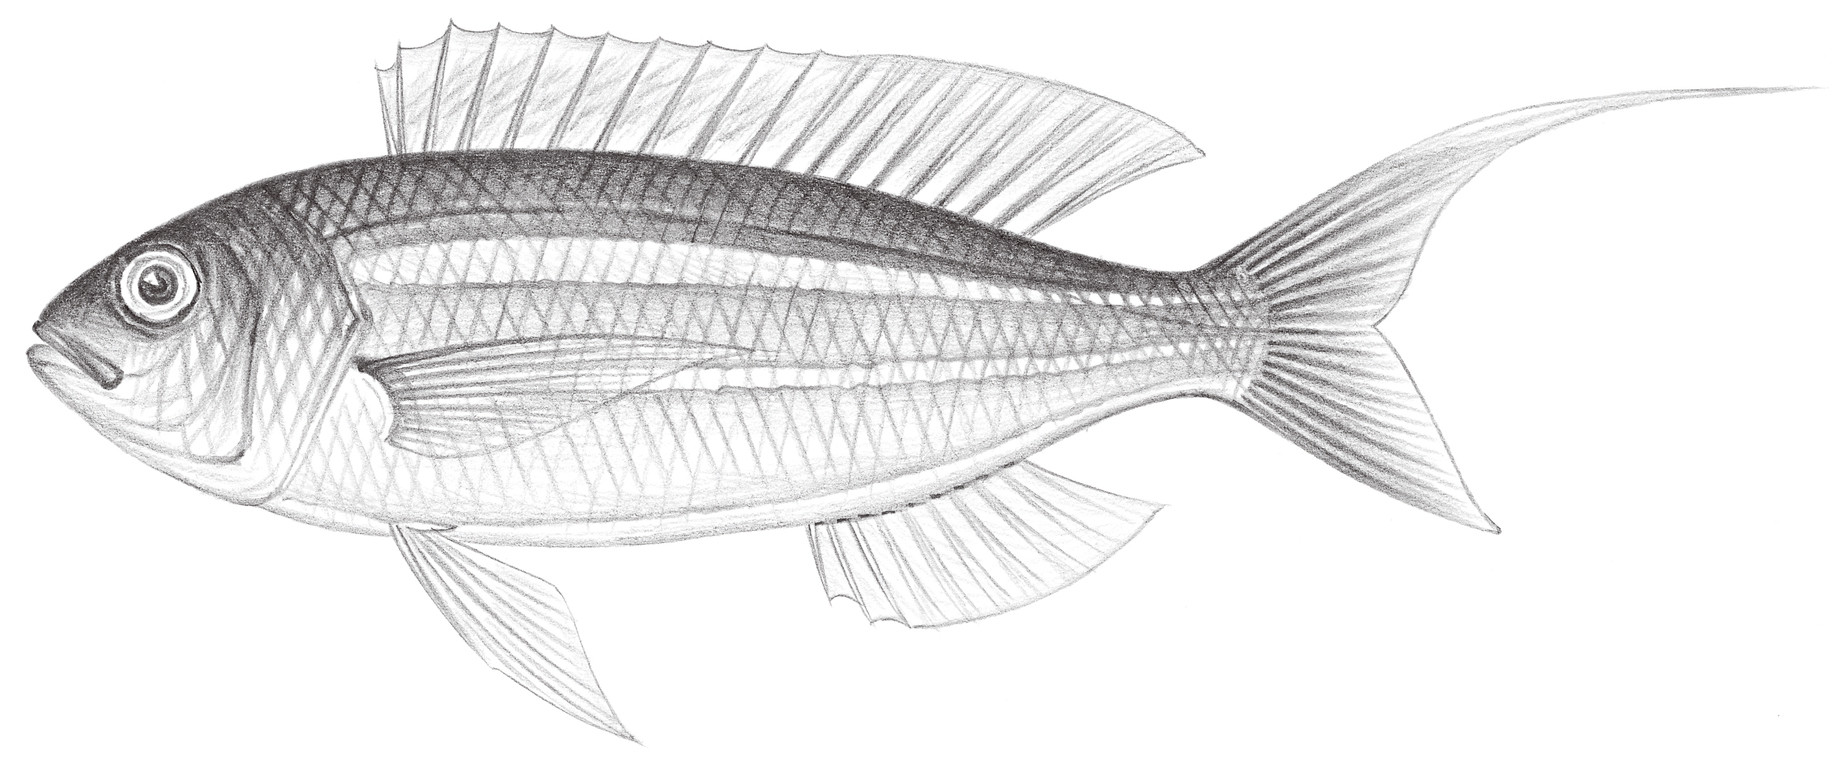 1403.	底金線魚 Nemipterus bathybius Snyder, 1911